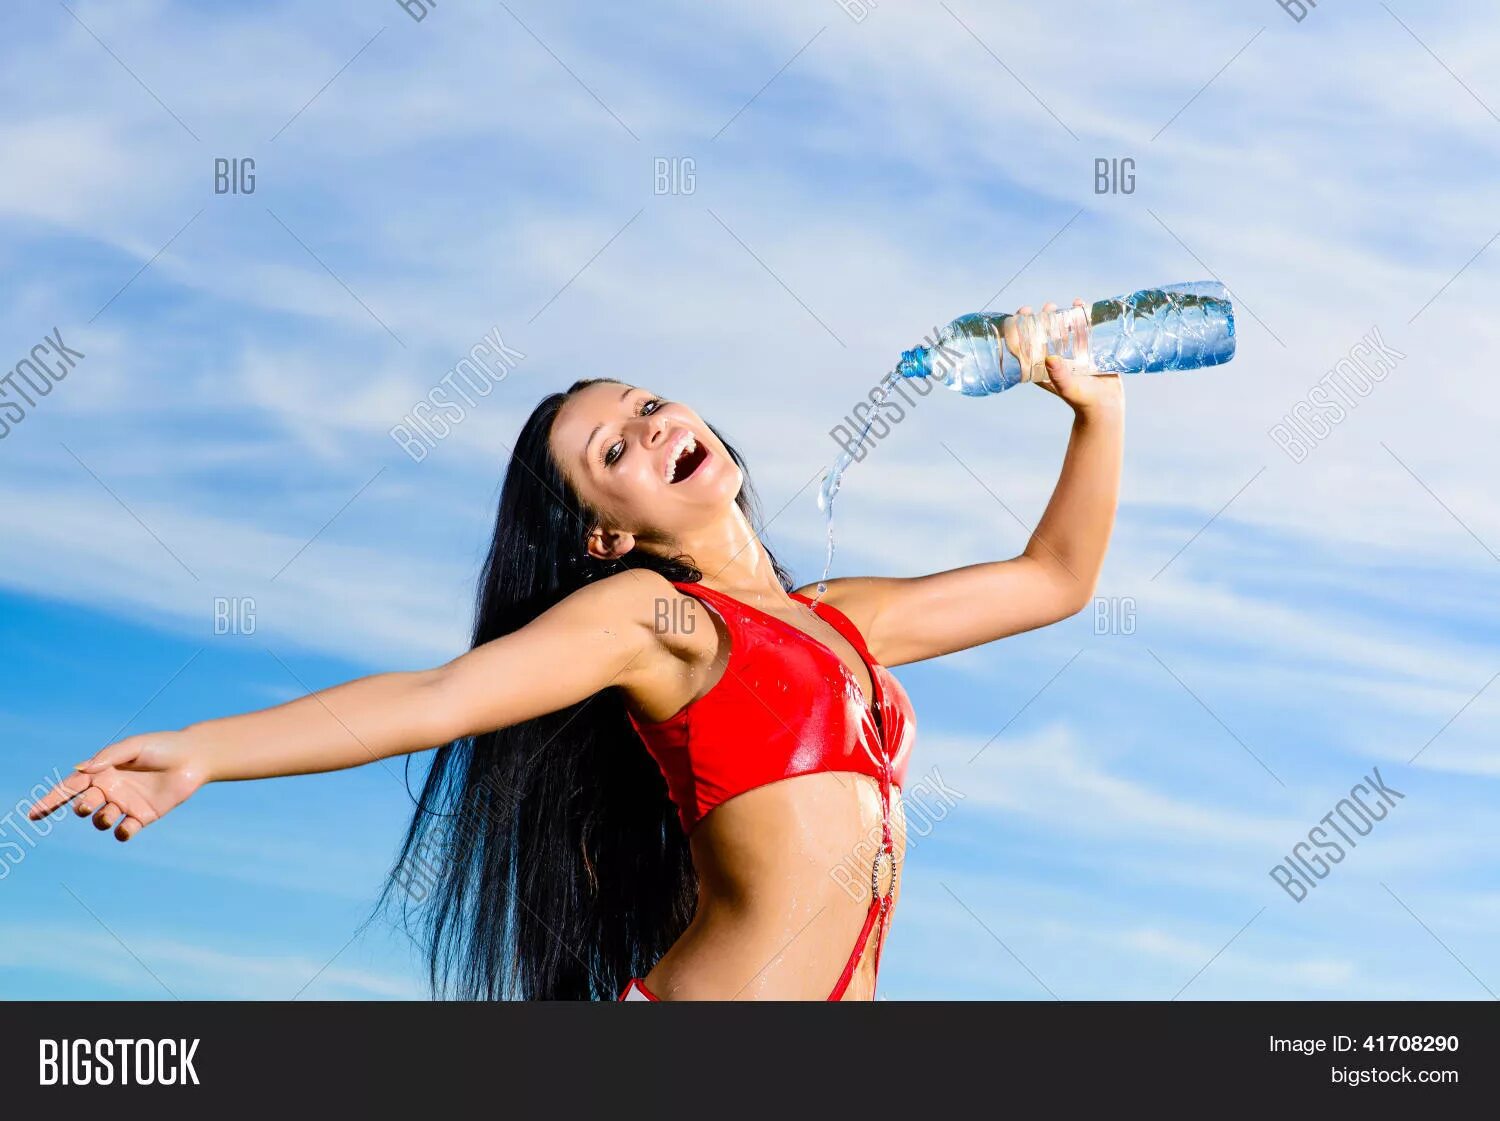 Девушка льет воду. Девушка в купальнике и бутылка. Девушка из воды с бутылкой. Девчонки резвятся в воде. Девушка в спортивной форме с бутылкой воды.